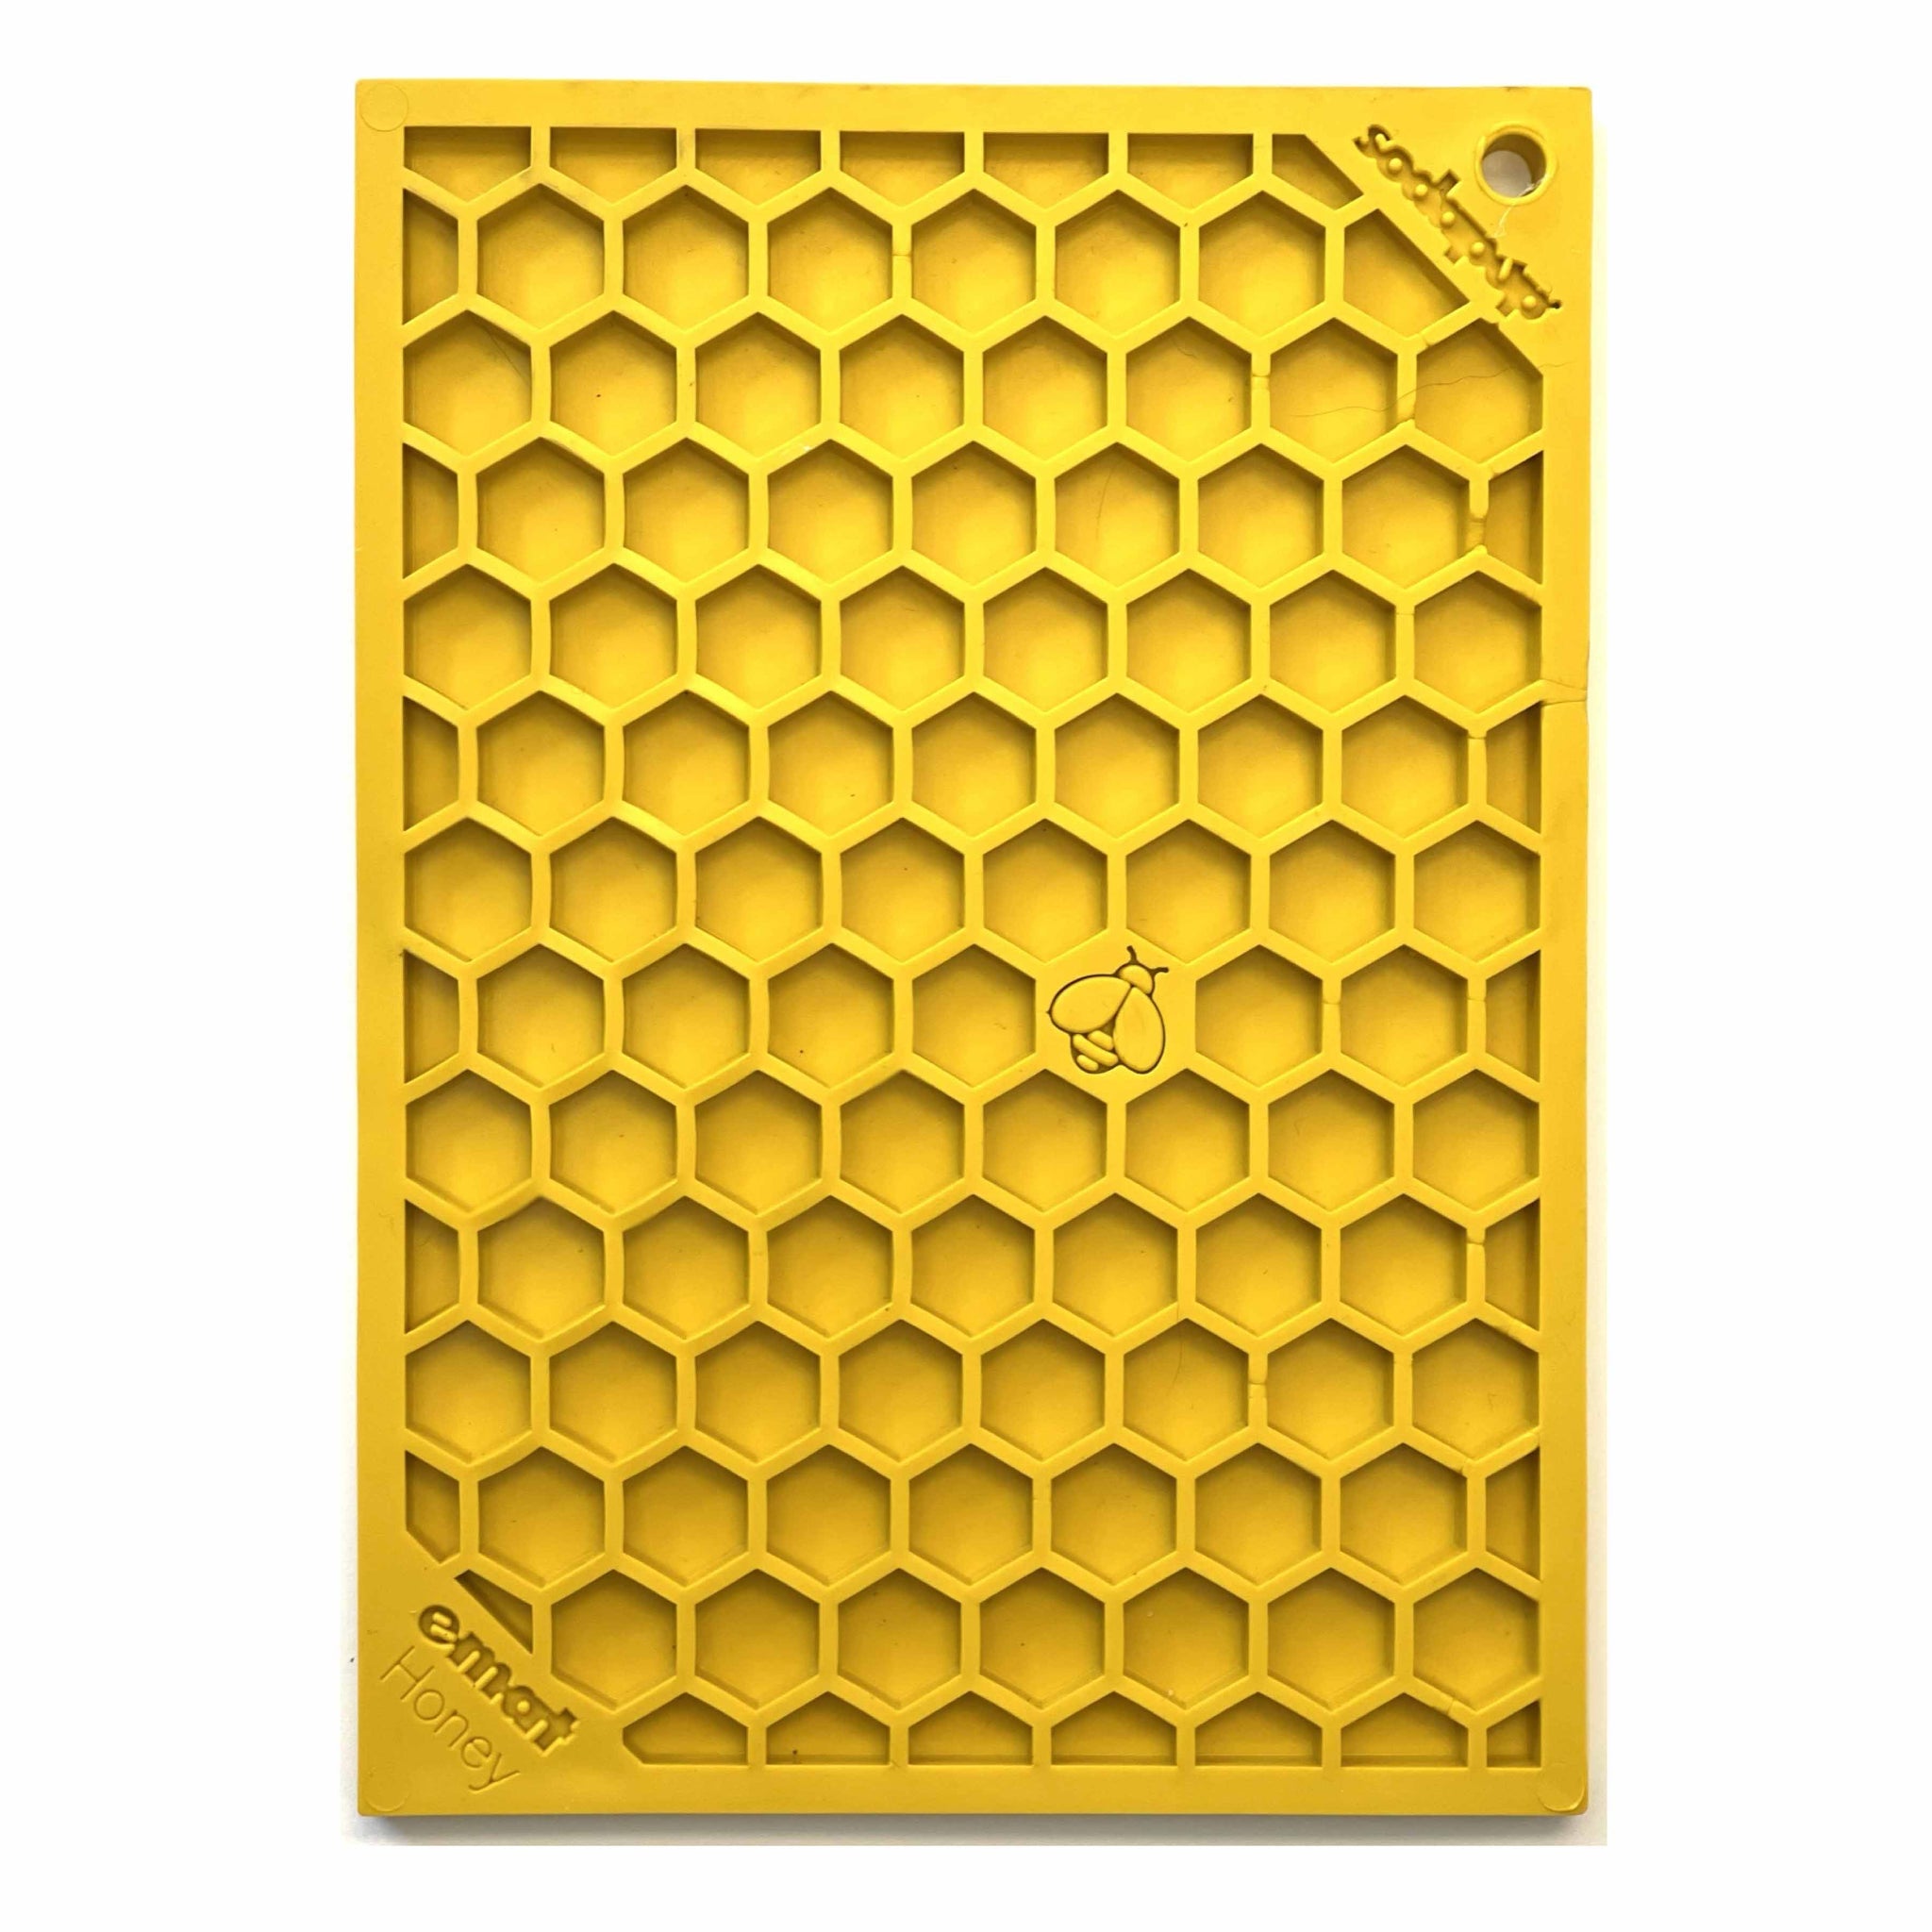 EMAT Lick Mat - Honeycomb